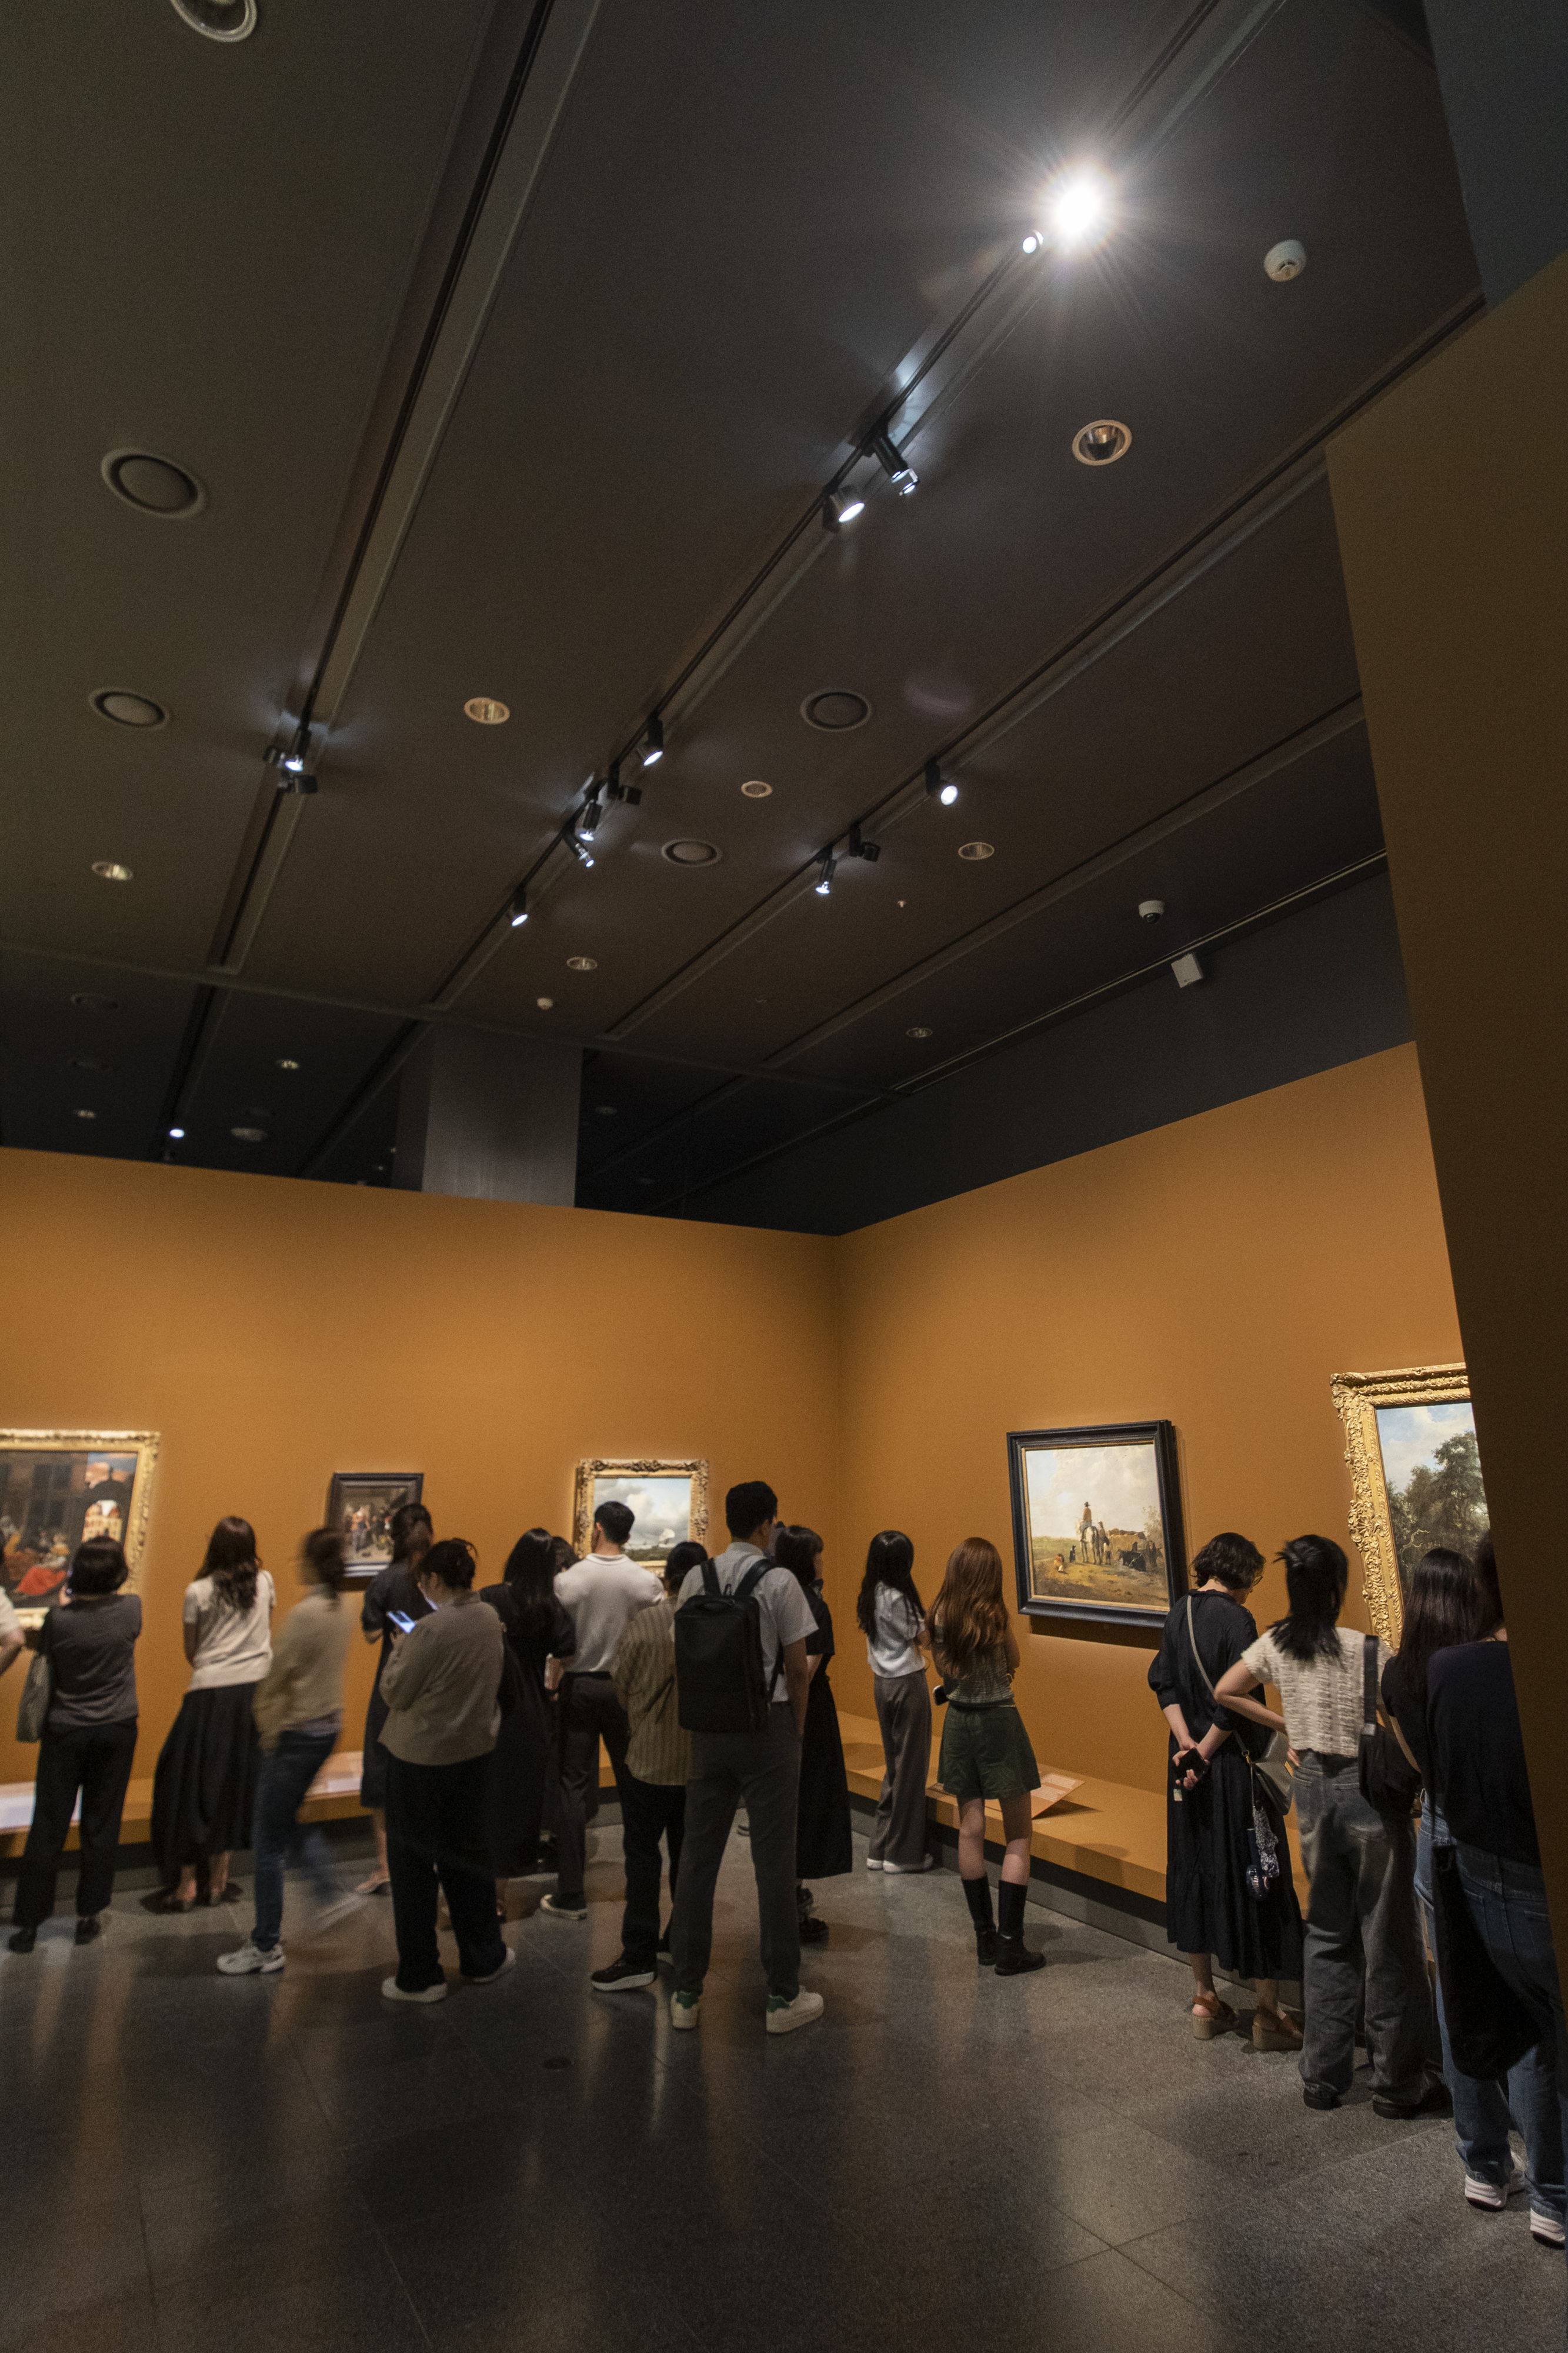 국립중앙박물관 ‘거장의 시선 사람을 향하다’에서 천장에 달린 조명을 받은 그림들을 관람객들이 보는 모습.